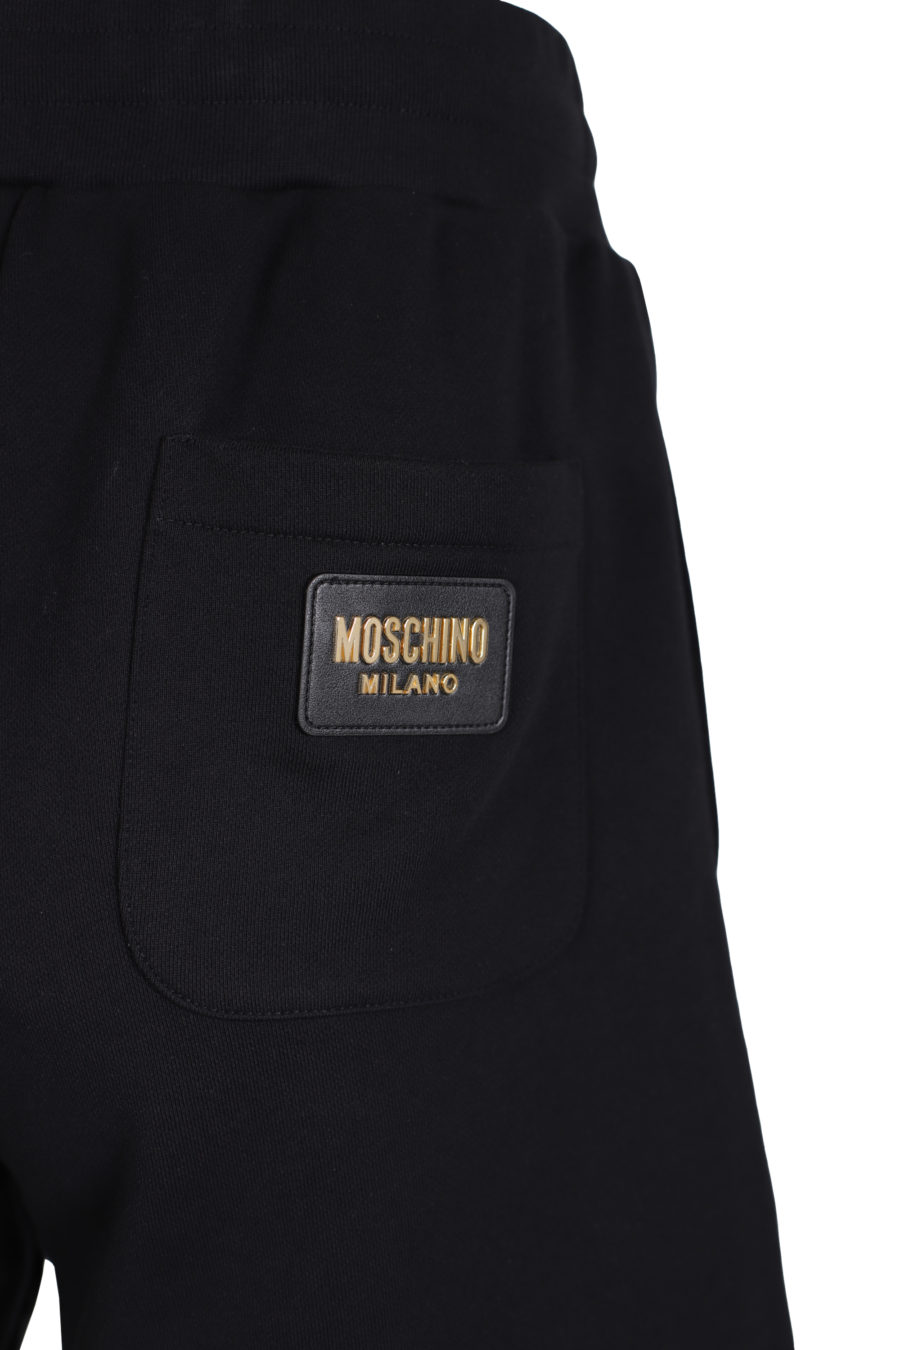 Schwarze Shorts mit goldenem Logo auf dem Rücken - IMG 1412